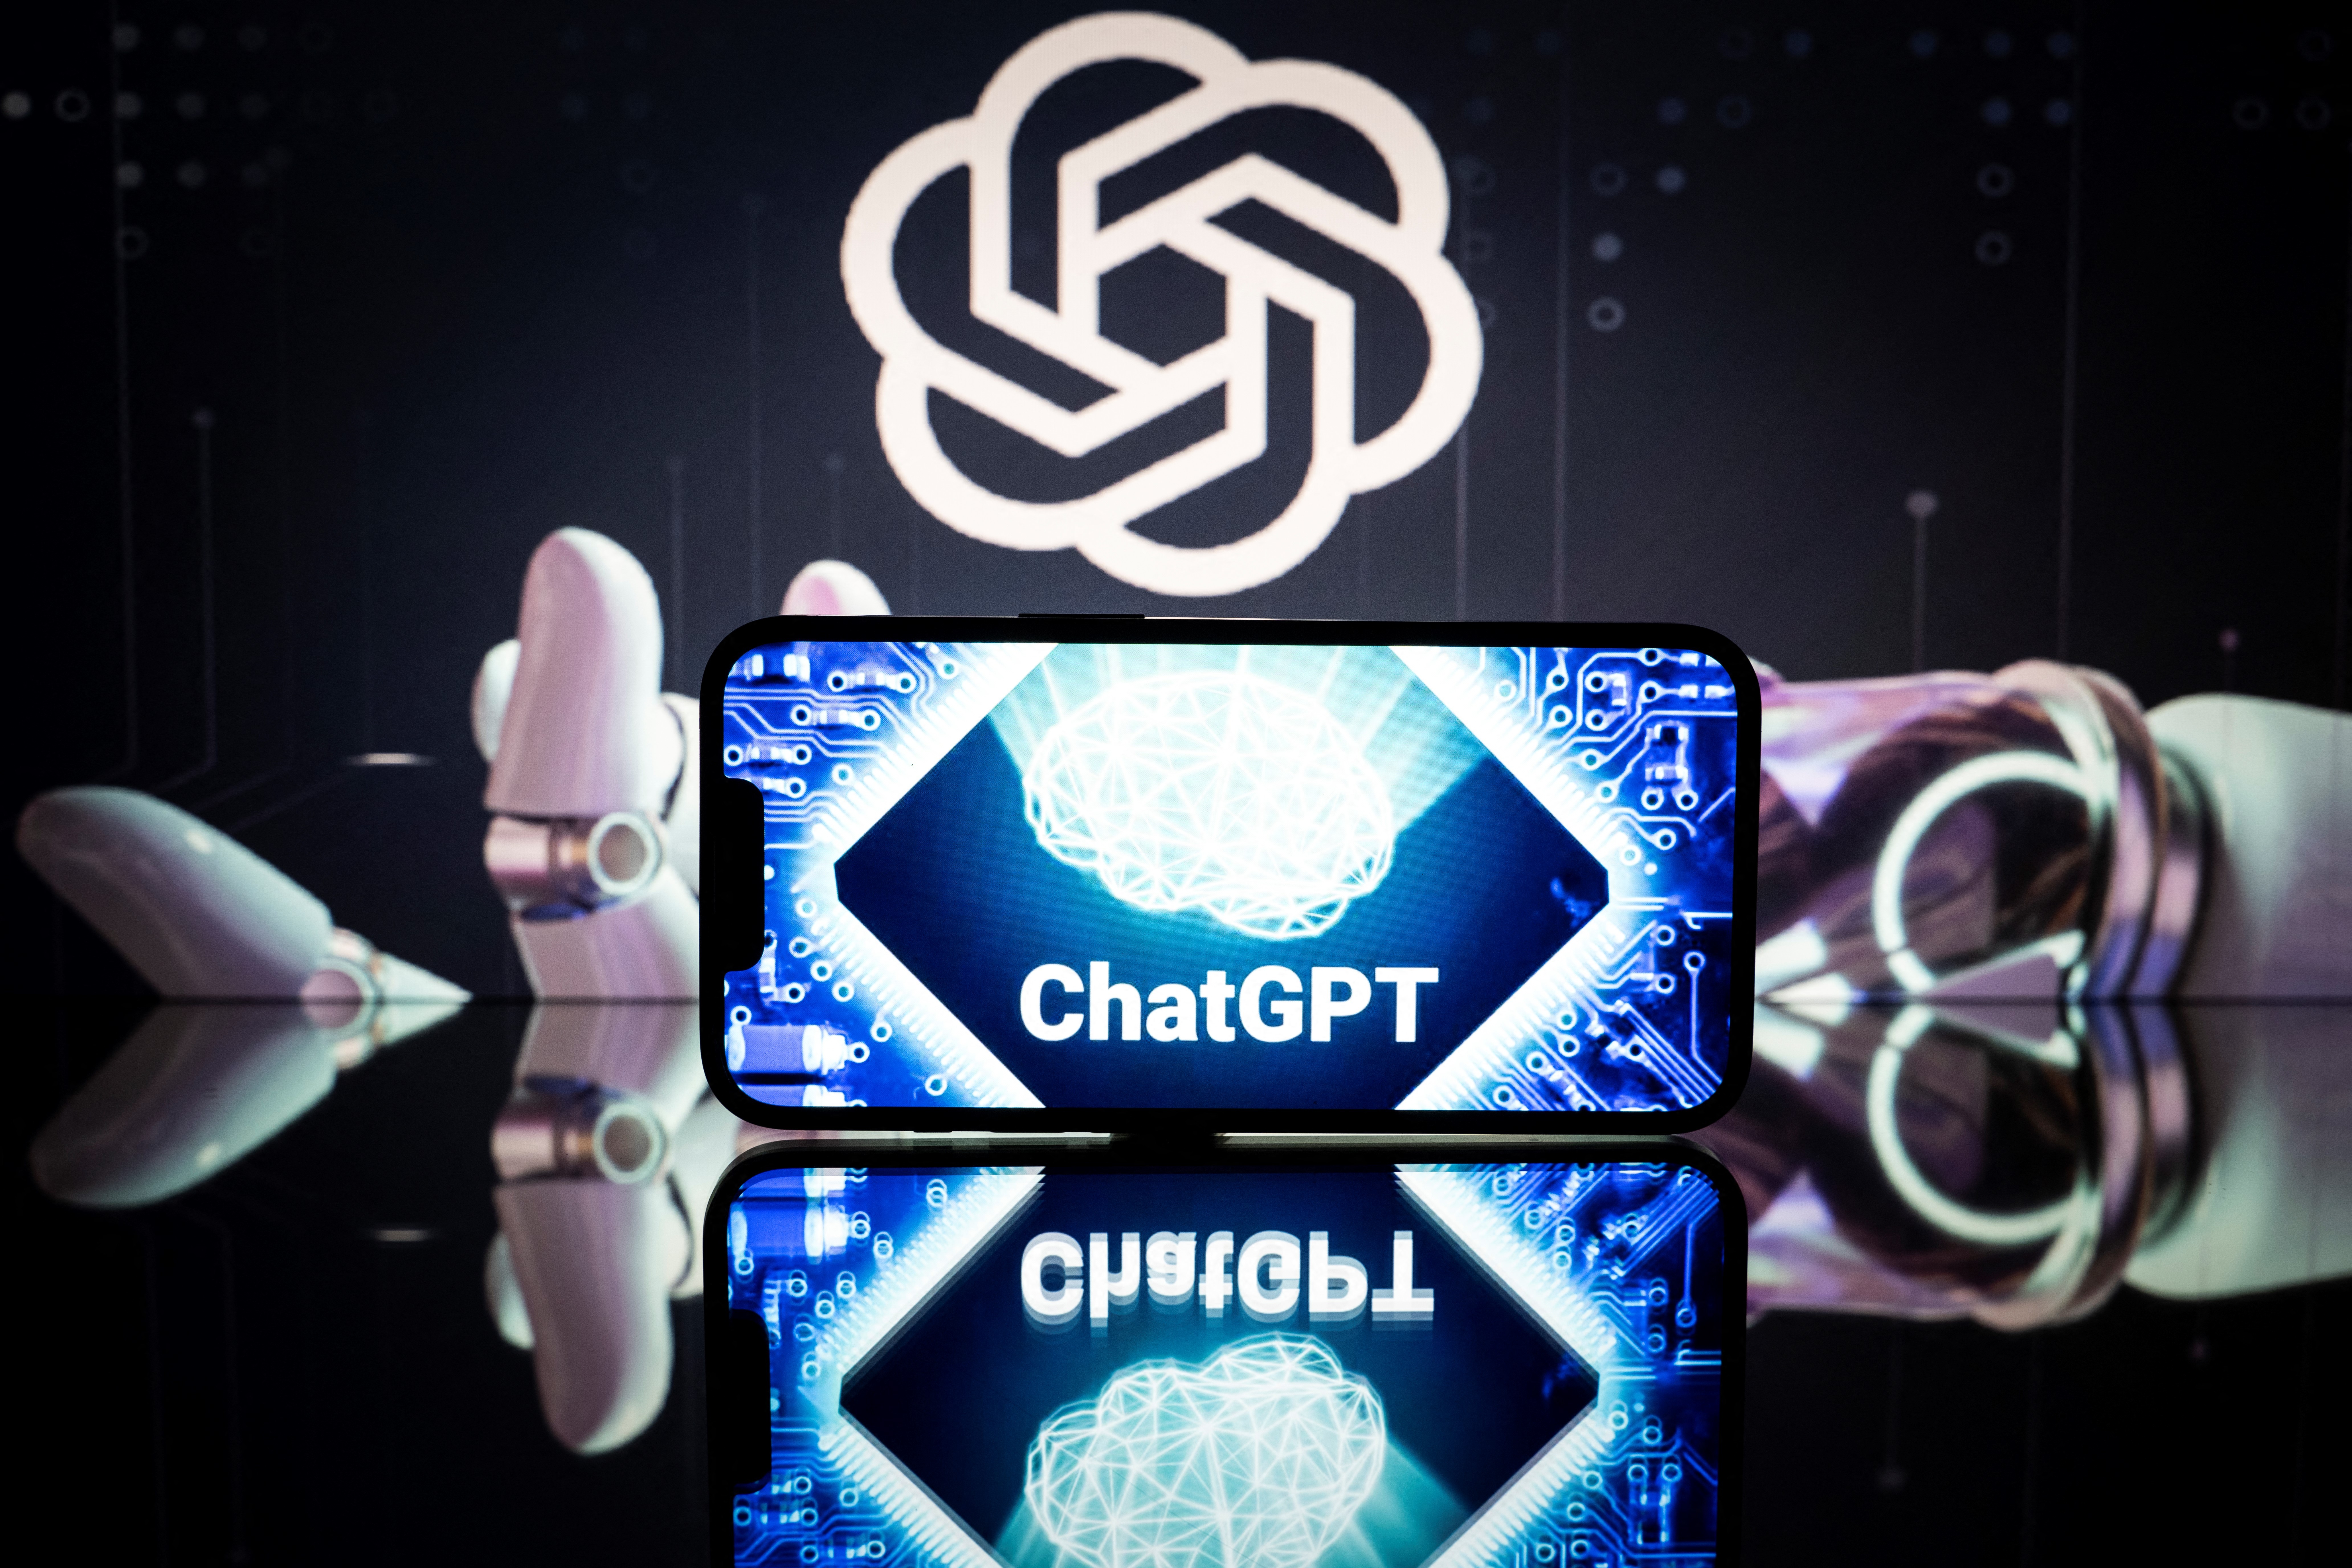 Para evitar 'cola', criadora do robô ChatGPT lança ferramenta para detectar texto gerado por inteligência artificial